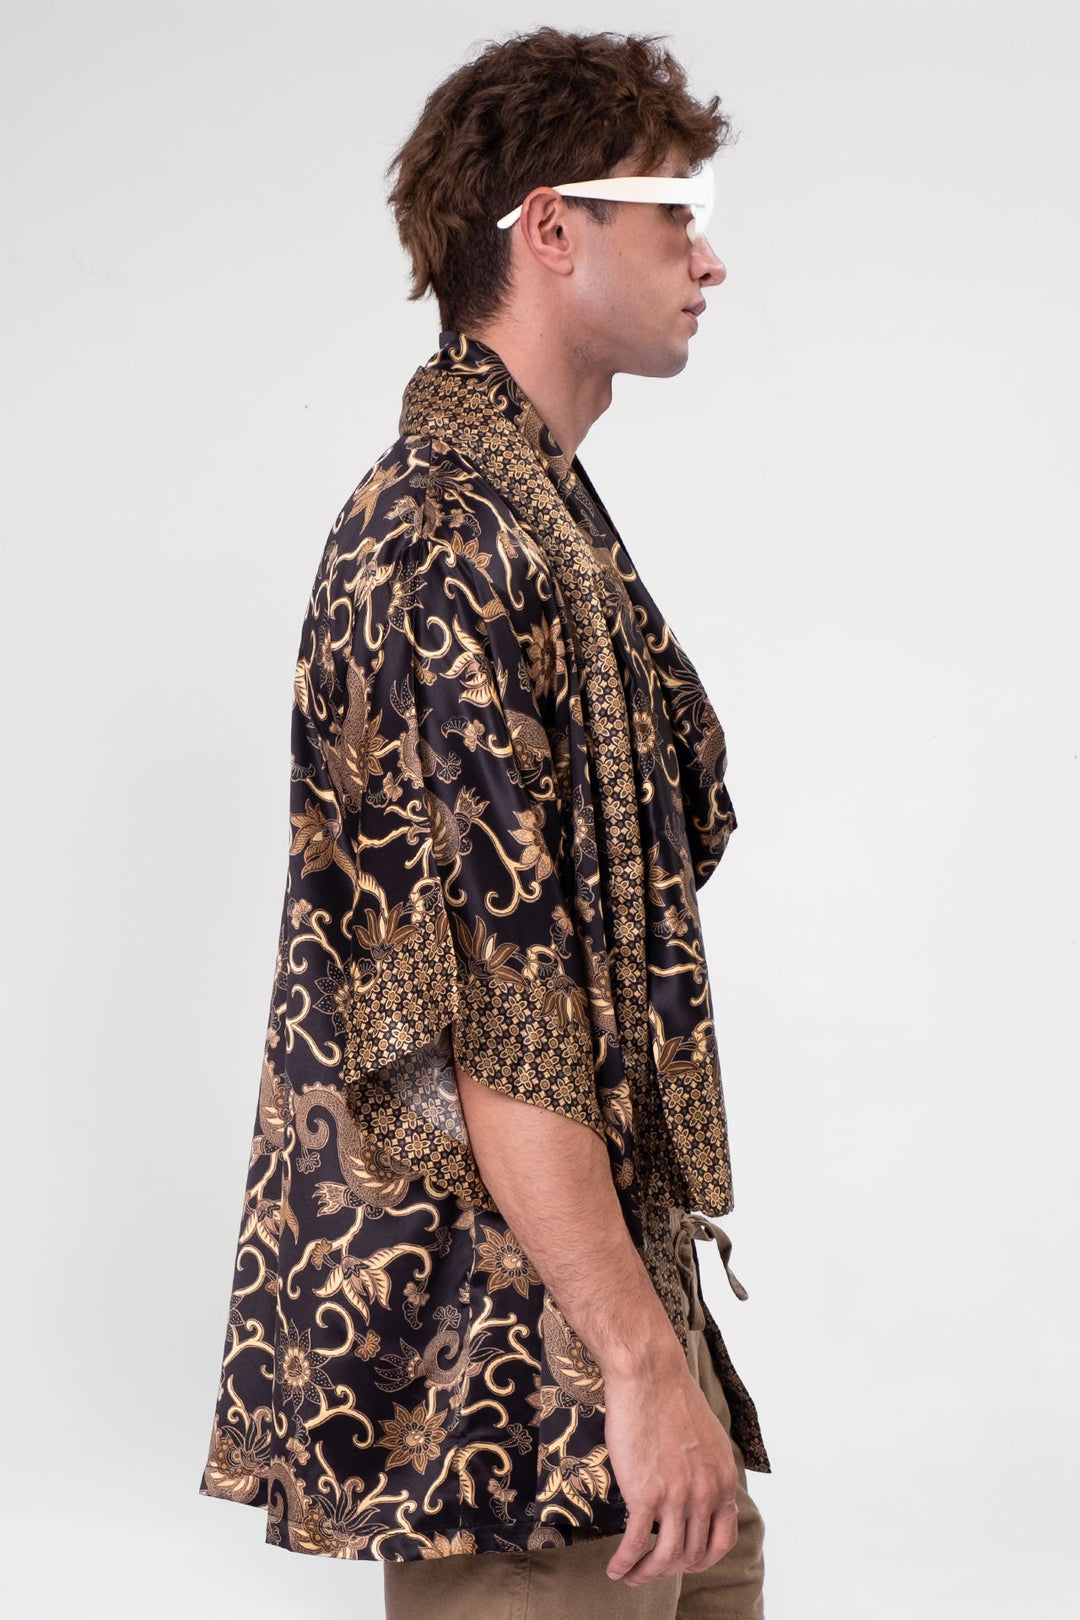 Model wearing Short Obsidian Odyssey Kimono in black and soft brown siren-like pattern.